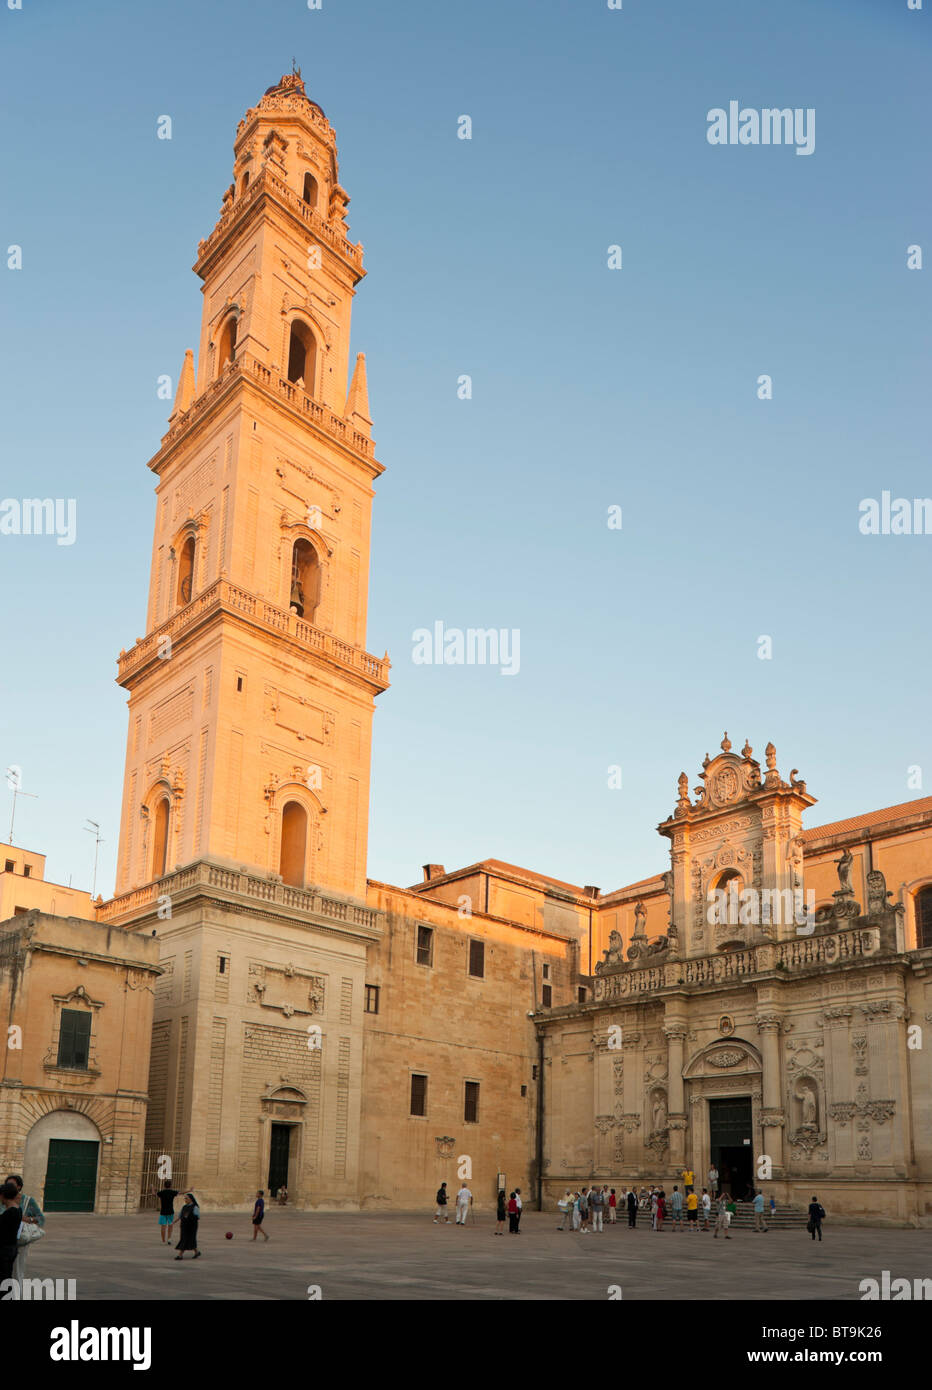 The campanile on Piazza del Duomo, Lecce, Puglia, Italy Stock Photo